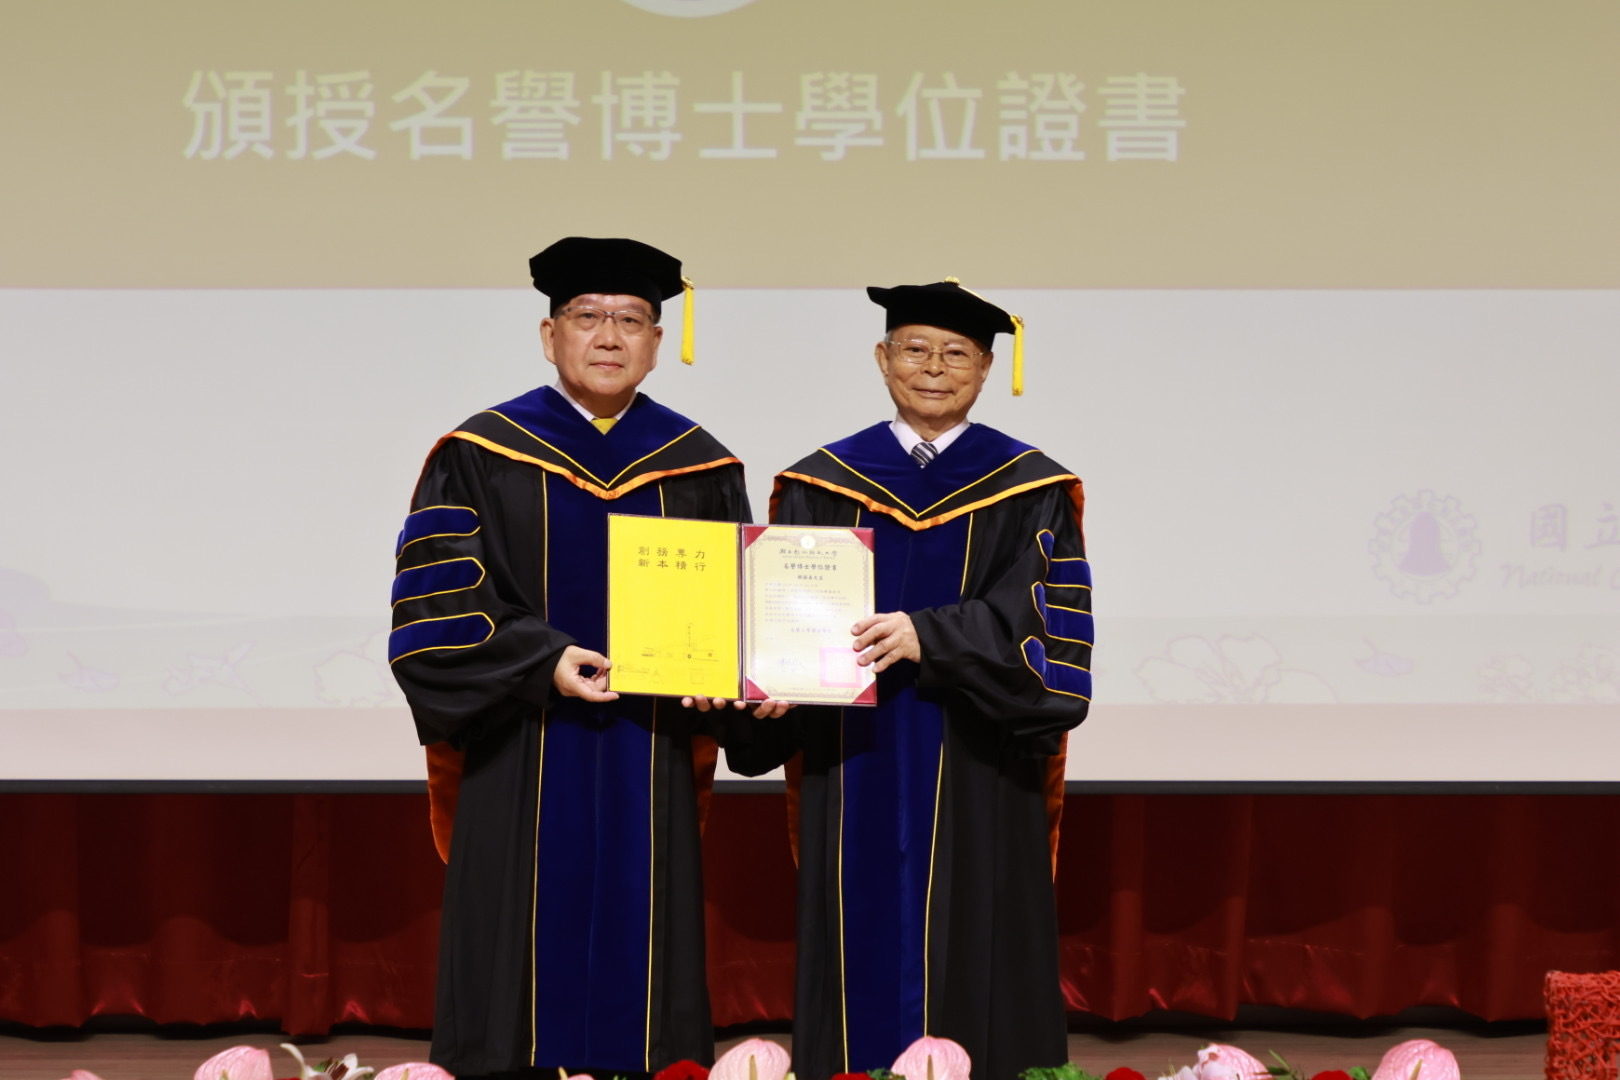 陳校長頒授韓顯壽名譽工學博士學位證書